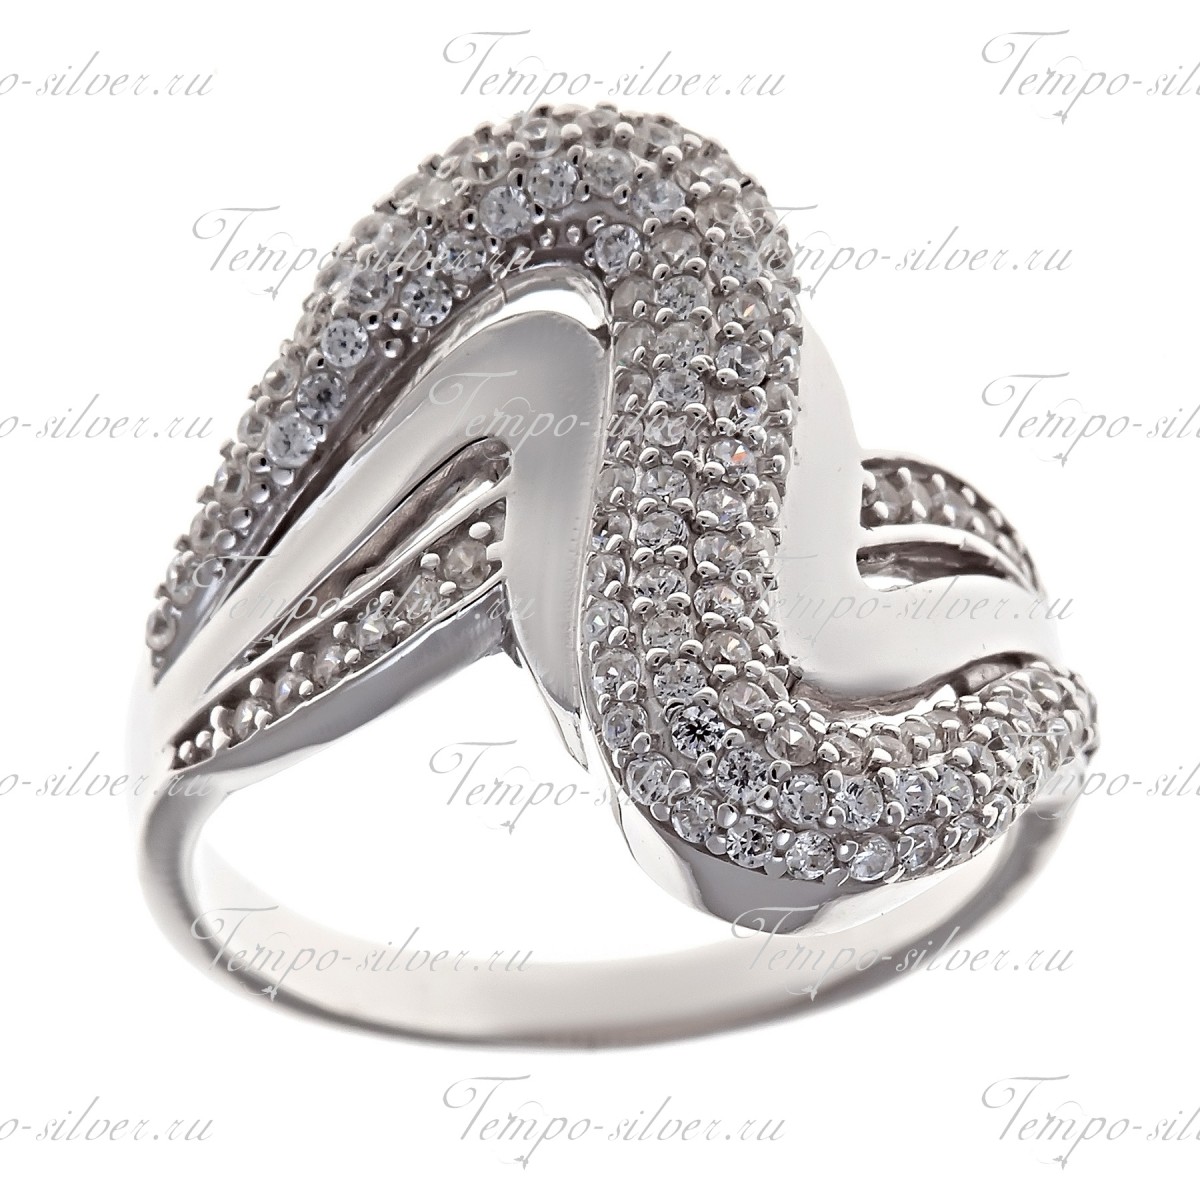 Кольцо из серебра зигзагообразной формы с белыми камнями